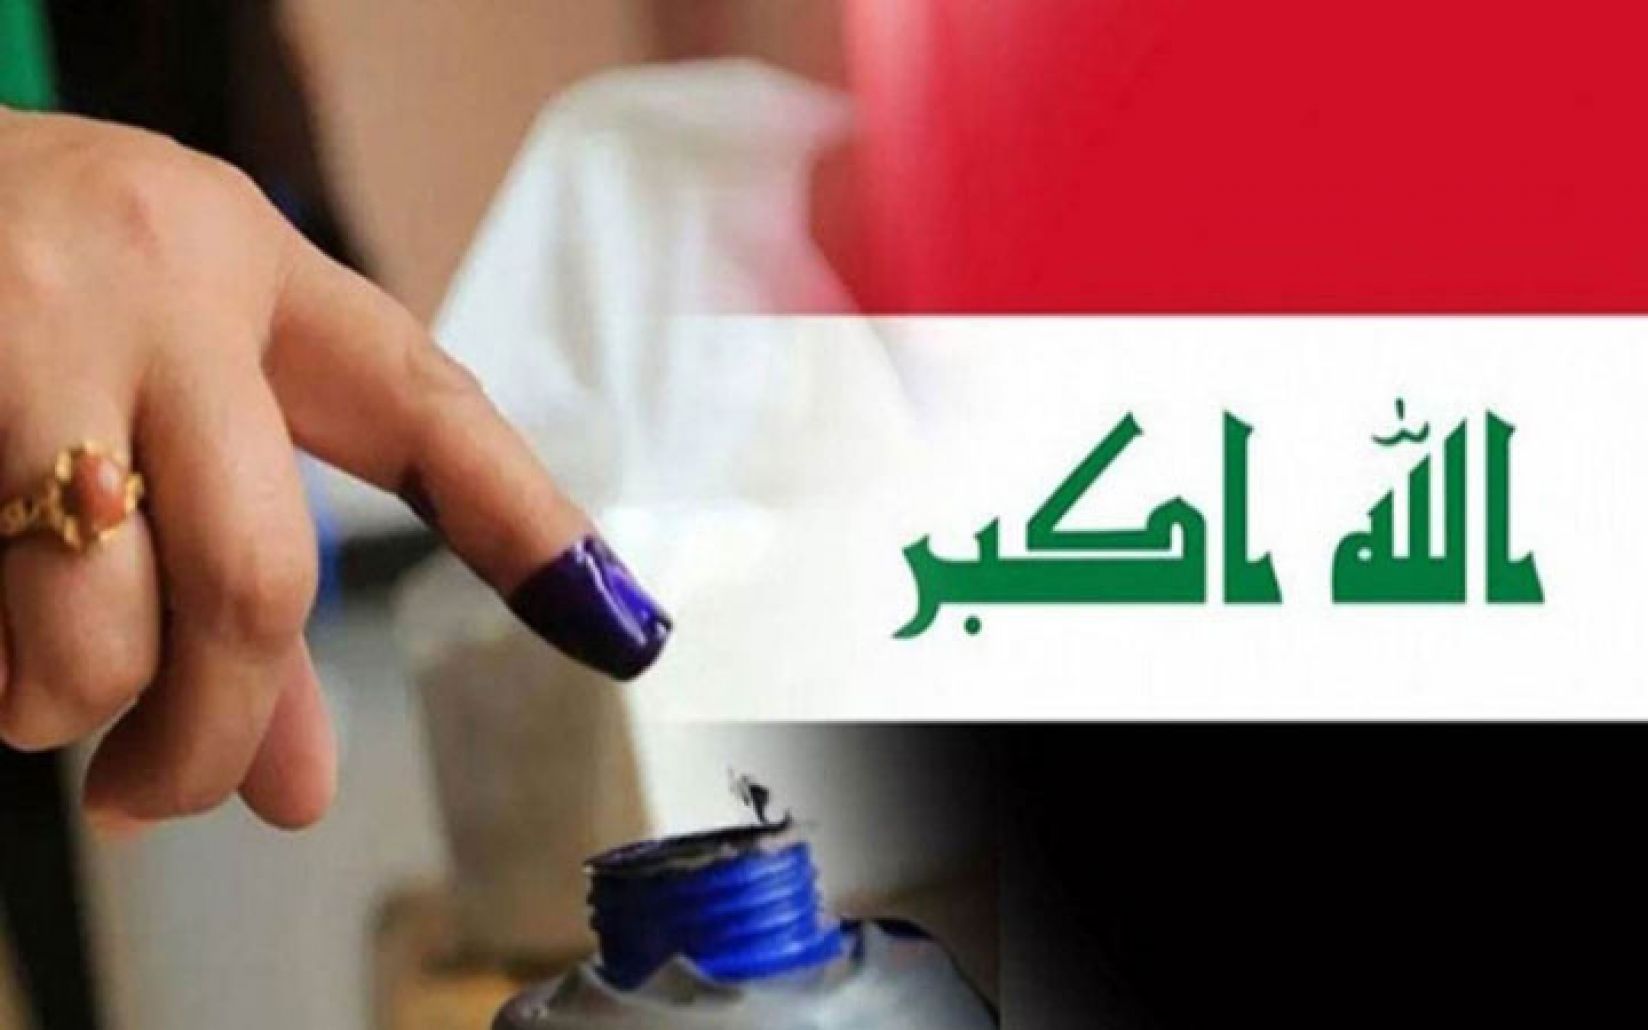 مفوضية الانتخابات العراقية: نسبة المشاركة 41%